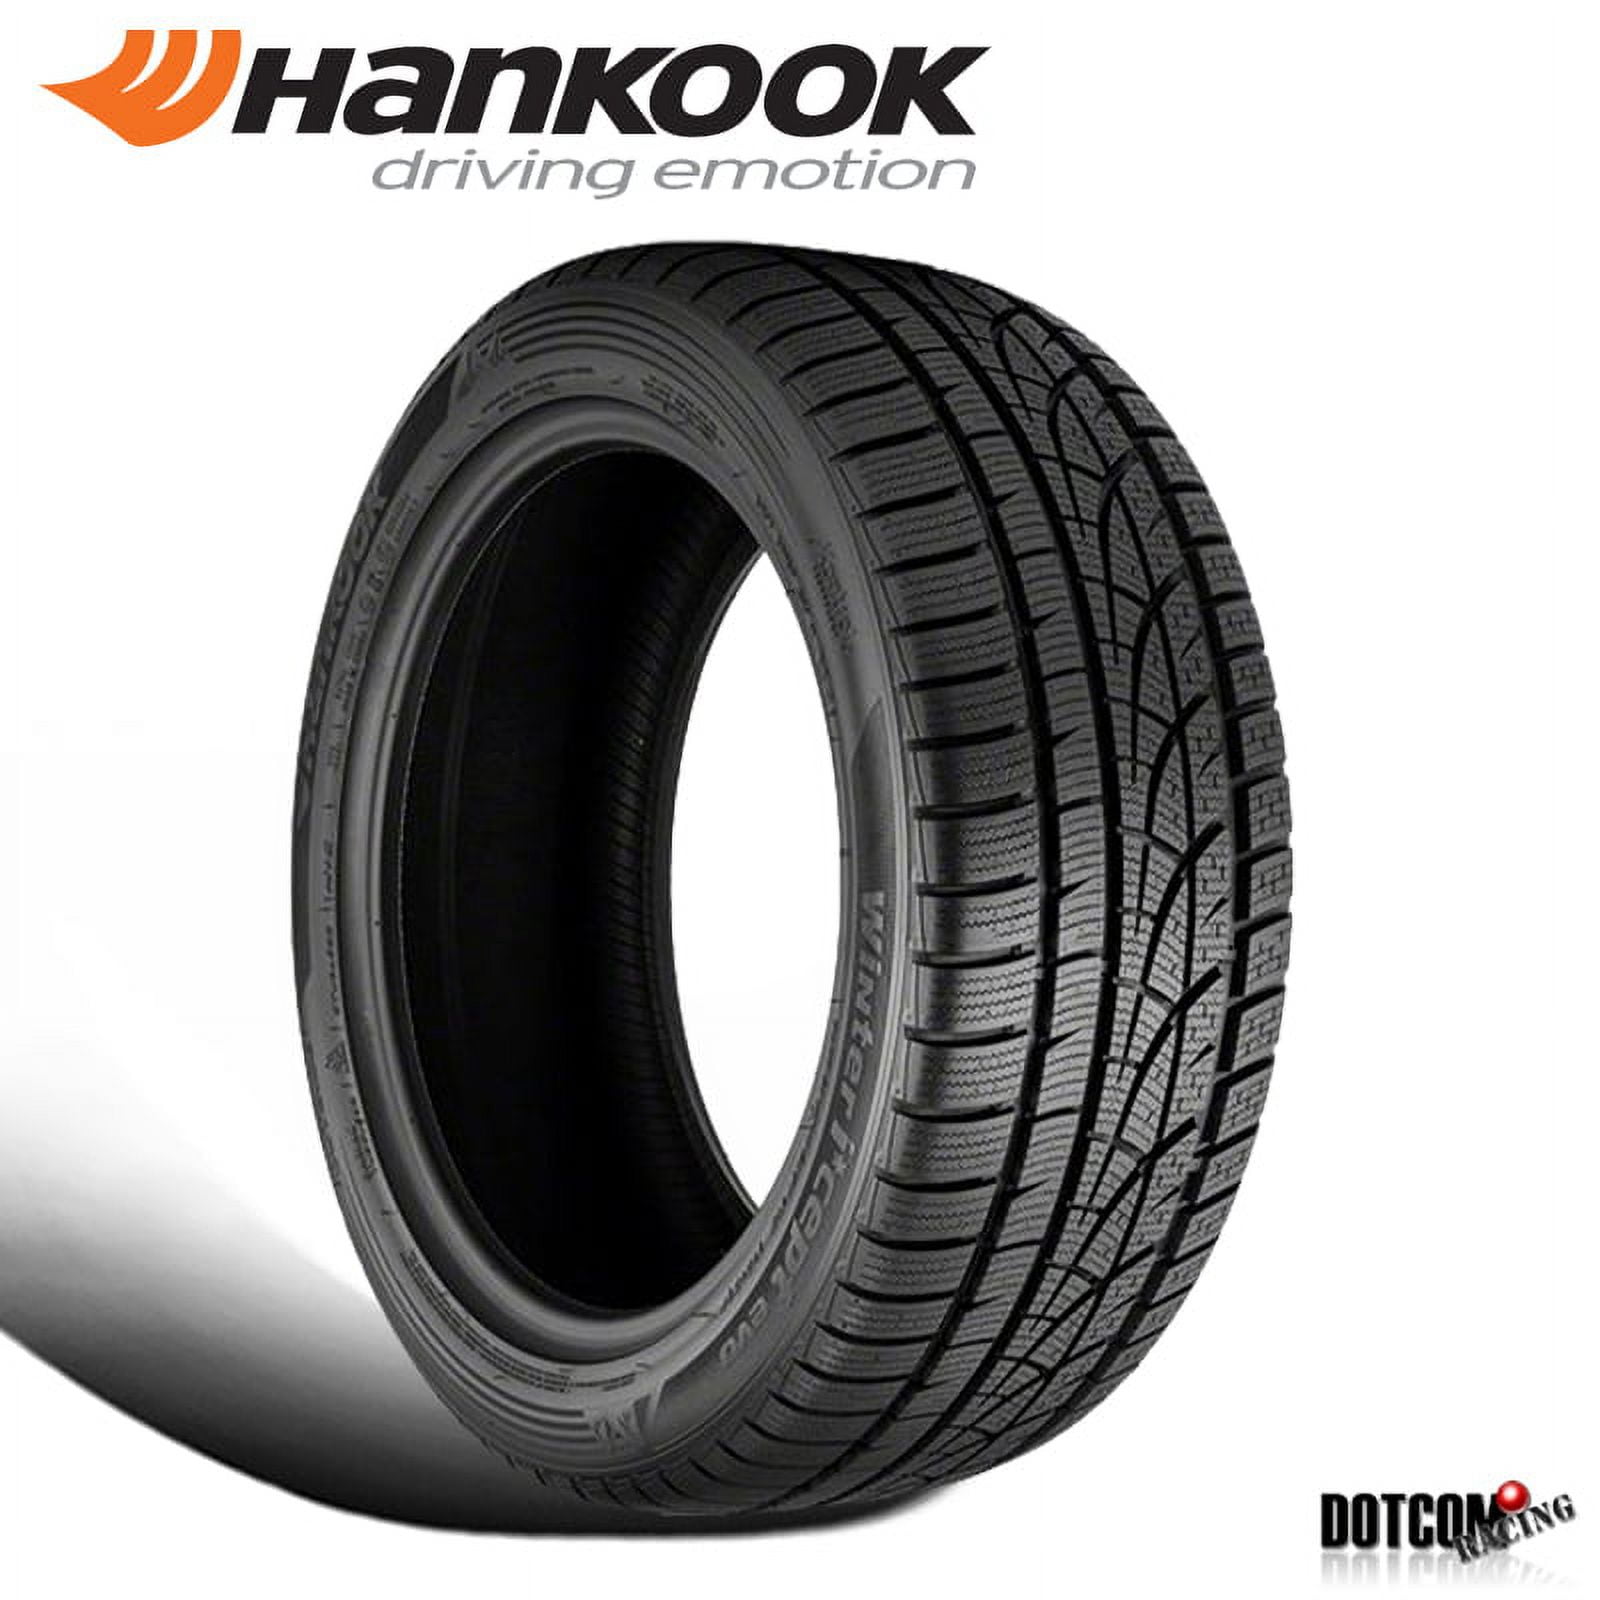 Hankook Winter i*cept evo (W310) 215/65R16 98 H Tire Fits: 2009-13 Subaru  Forester X, 2017-22 Jeep Renegade North